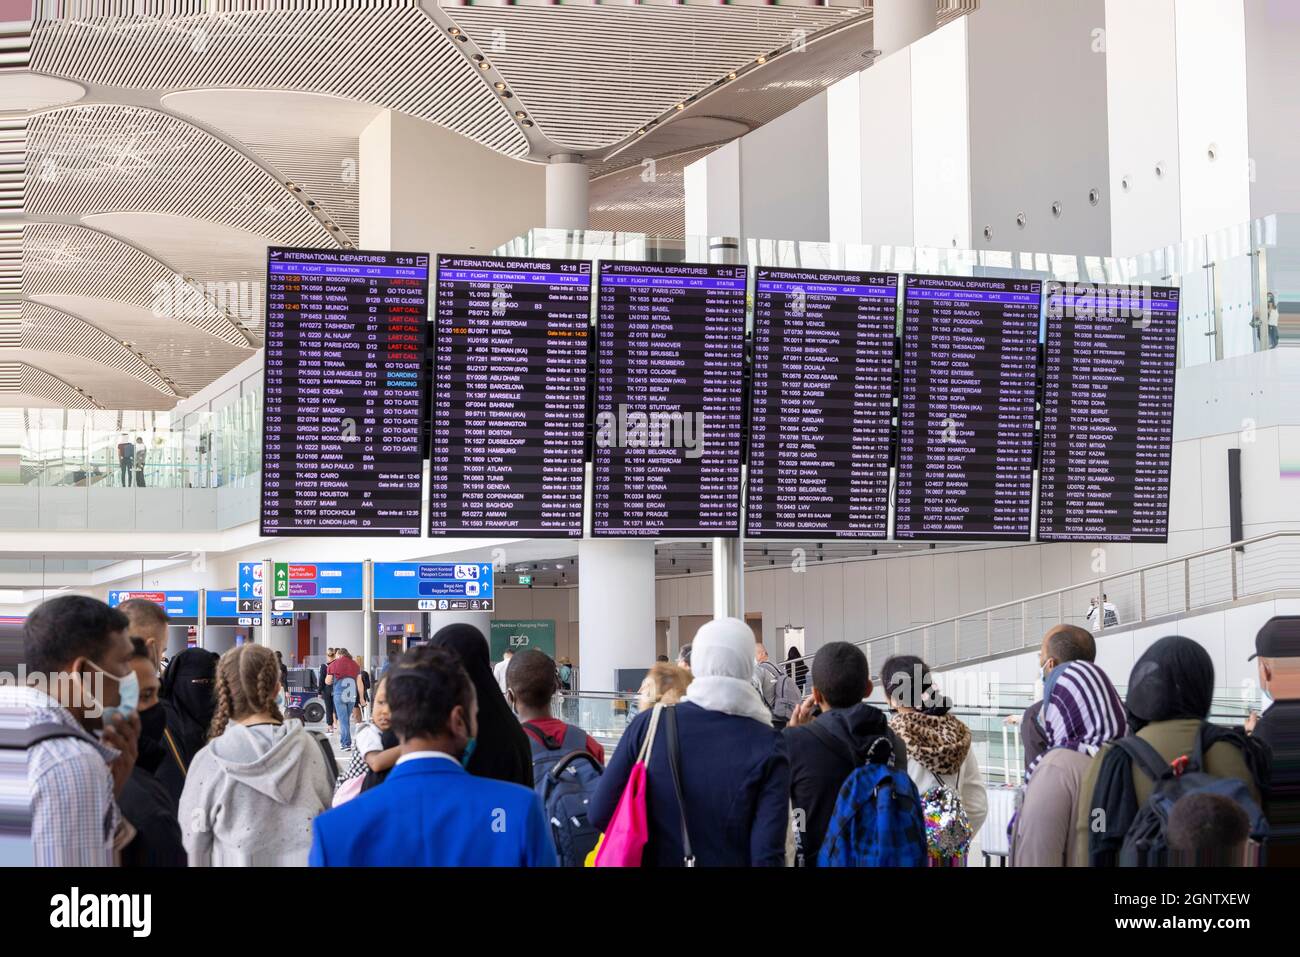 Passagers en transit regardant le panneau de départ, aéroport d'Istanbul. Turquie Banque D'Images